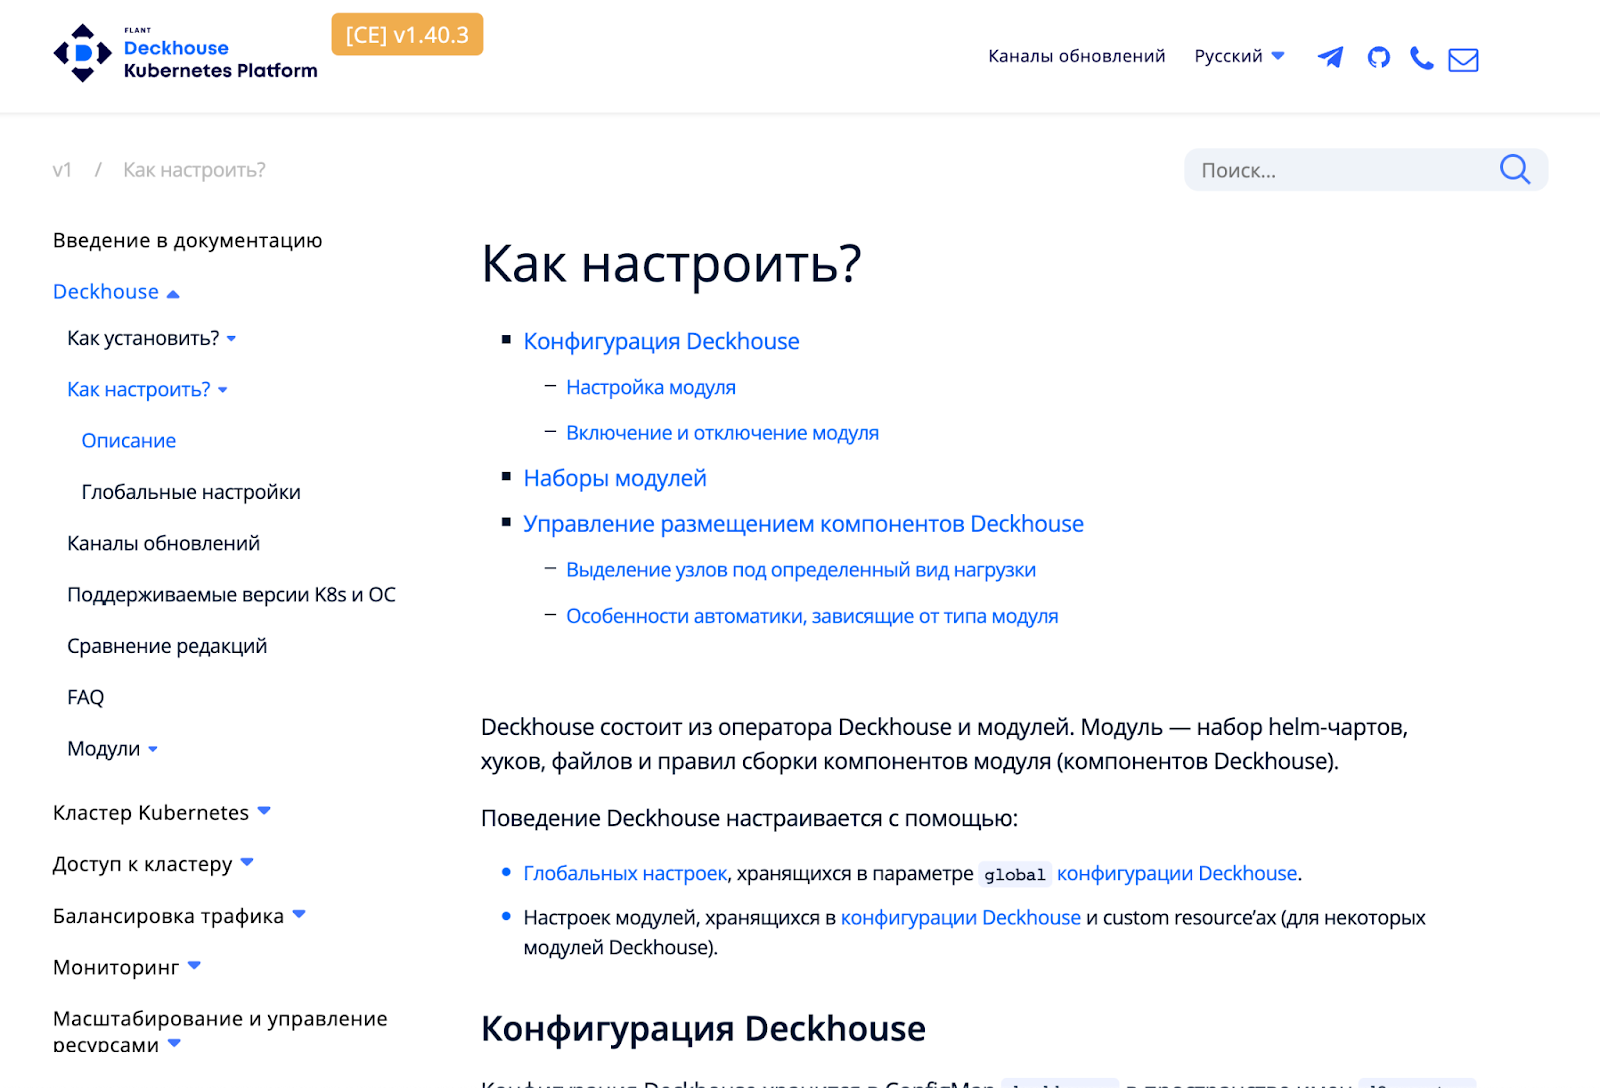 Разворачиваем Kubernetes-платформу Deckhouse в Yandex Cloud - 15